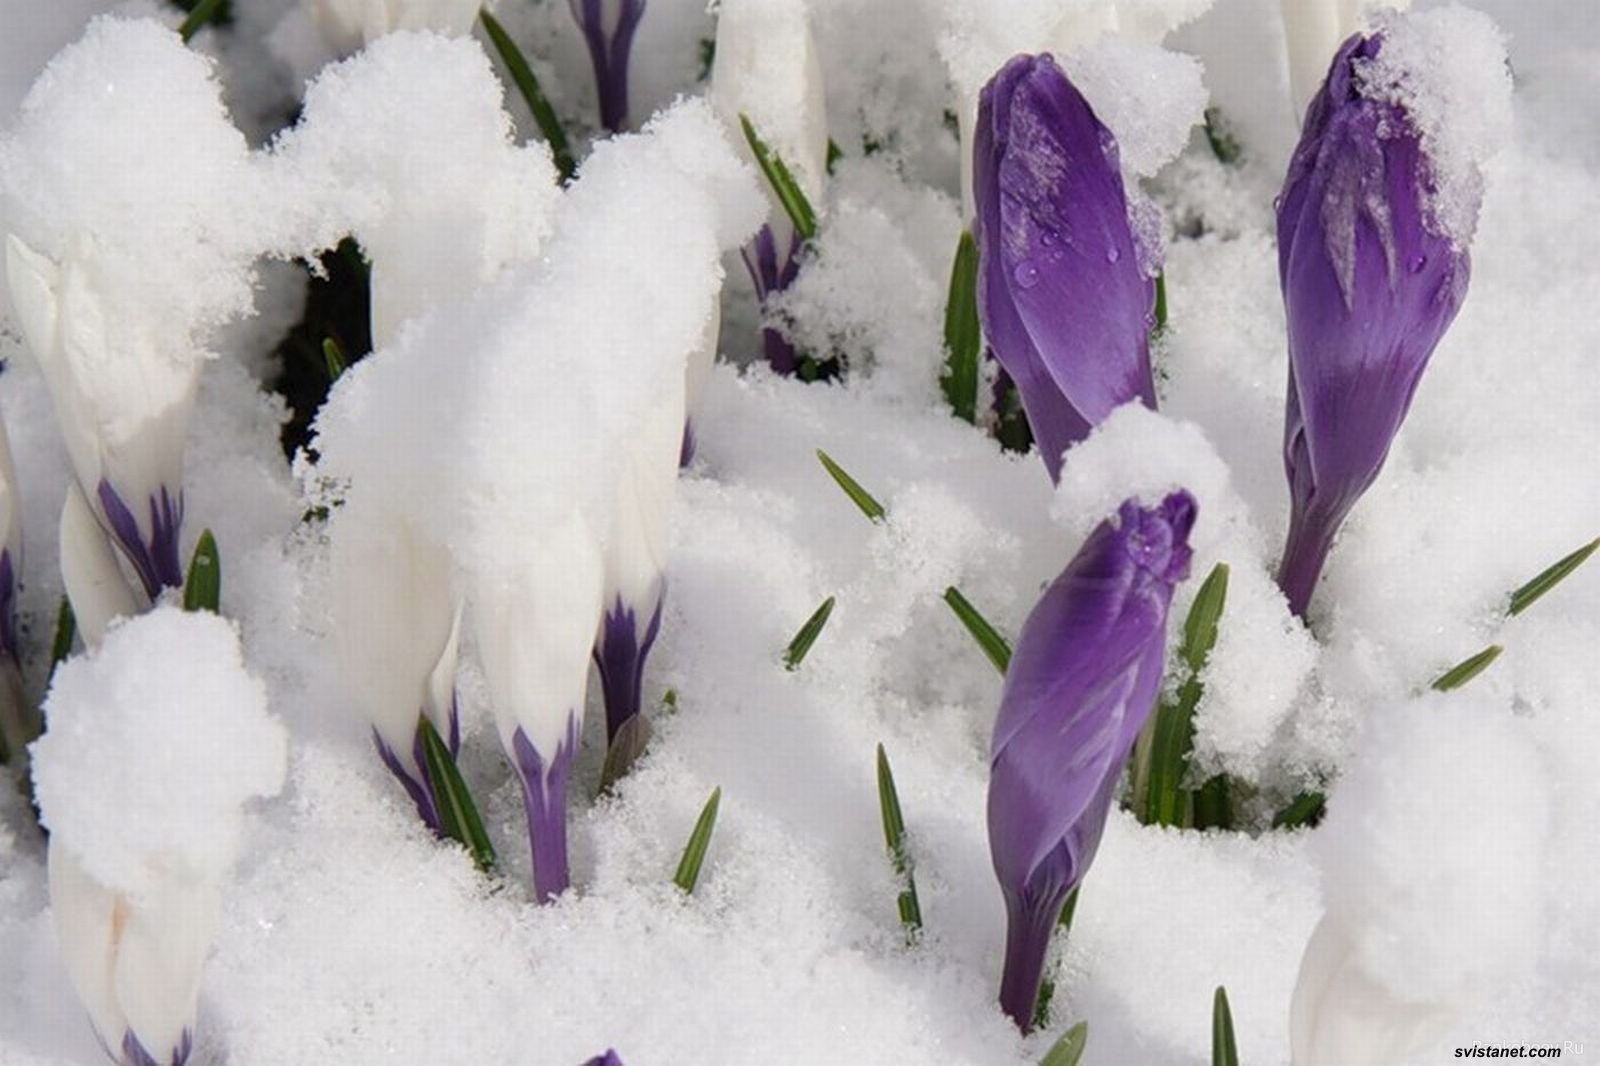 Фотография март 7. Первые весенние цветы. Крокусы в снегу. Цветы из под снега. Первоцветы в снегу.